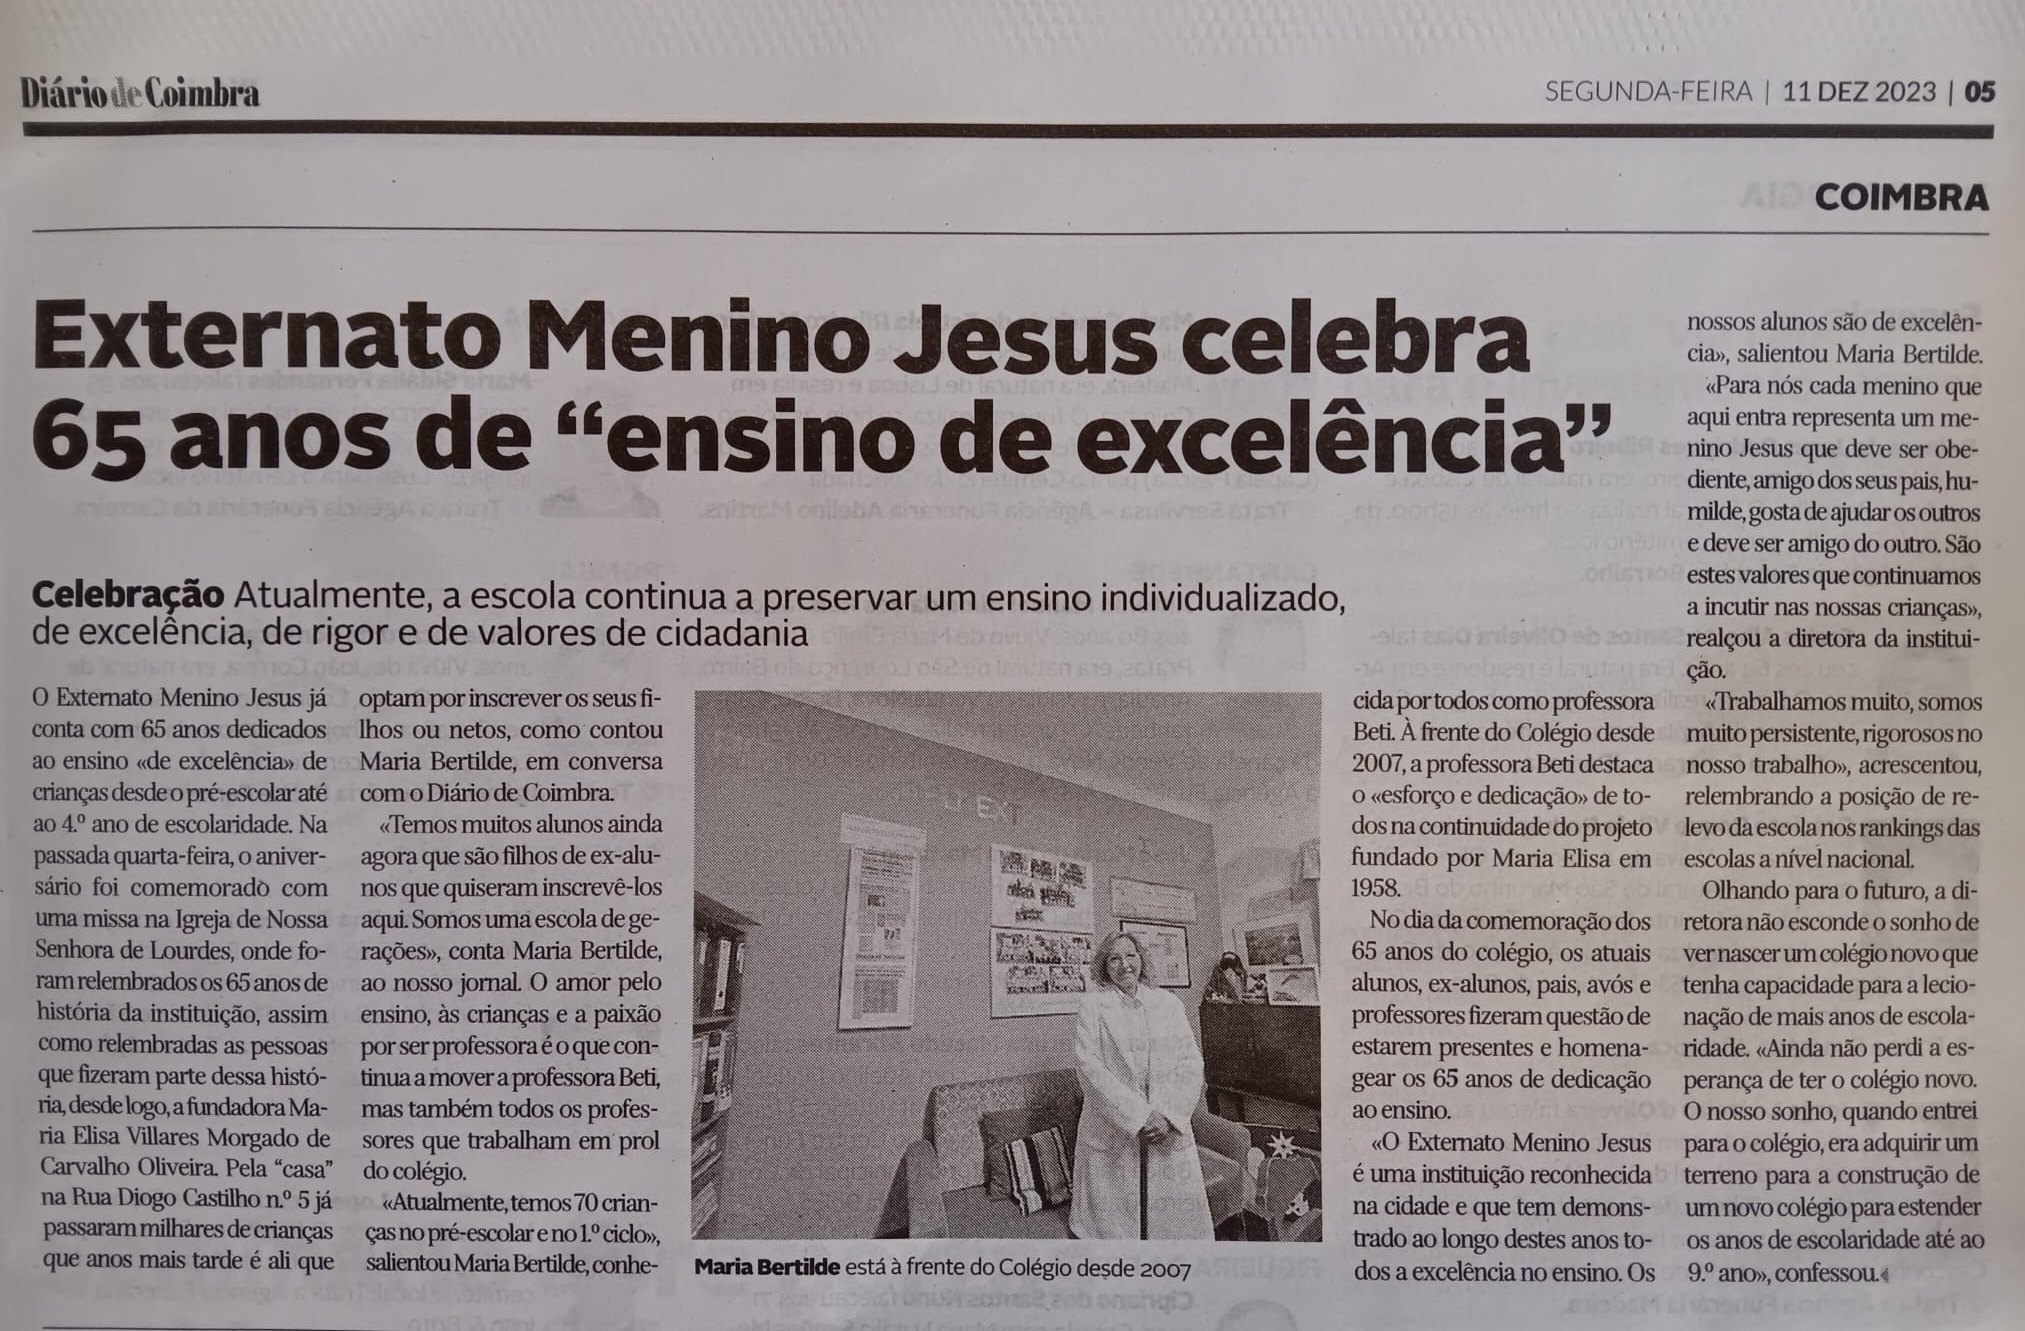 Notícia: Externato Menino Jesus celebra 65 anos de "ensino de excelência", Diário de Coimbra, 11 dez 2023